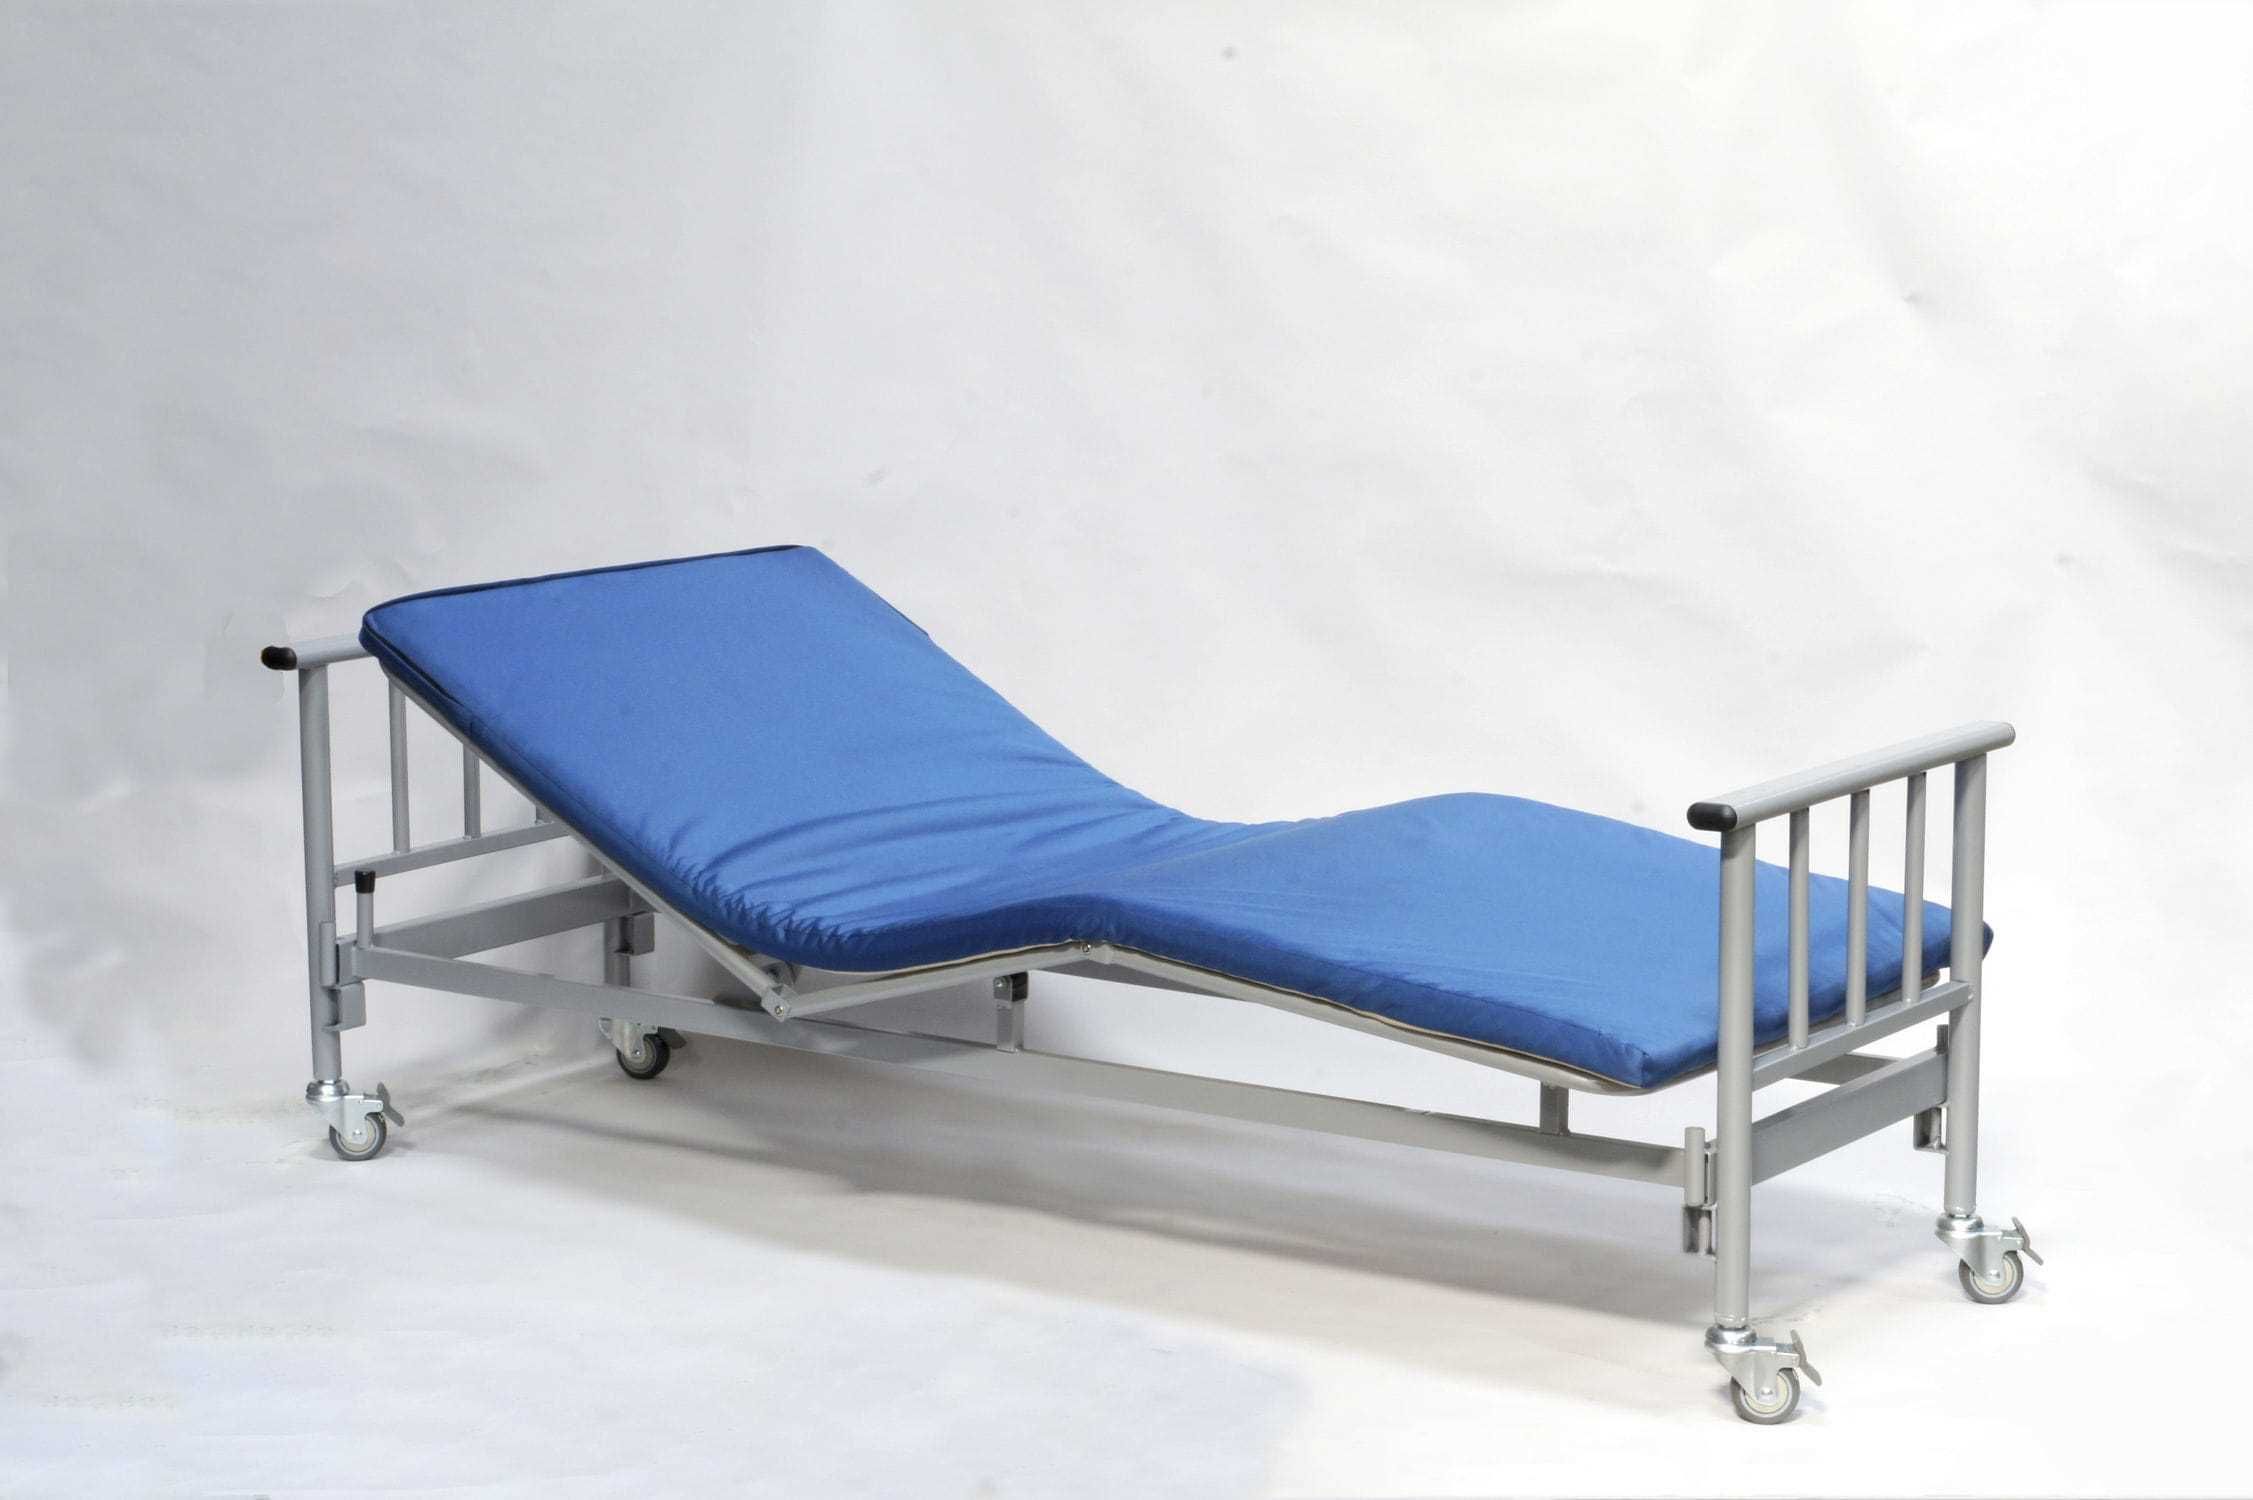 Medical bed 